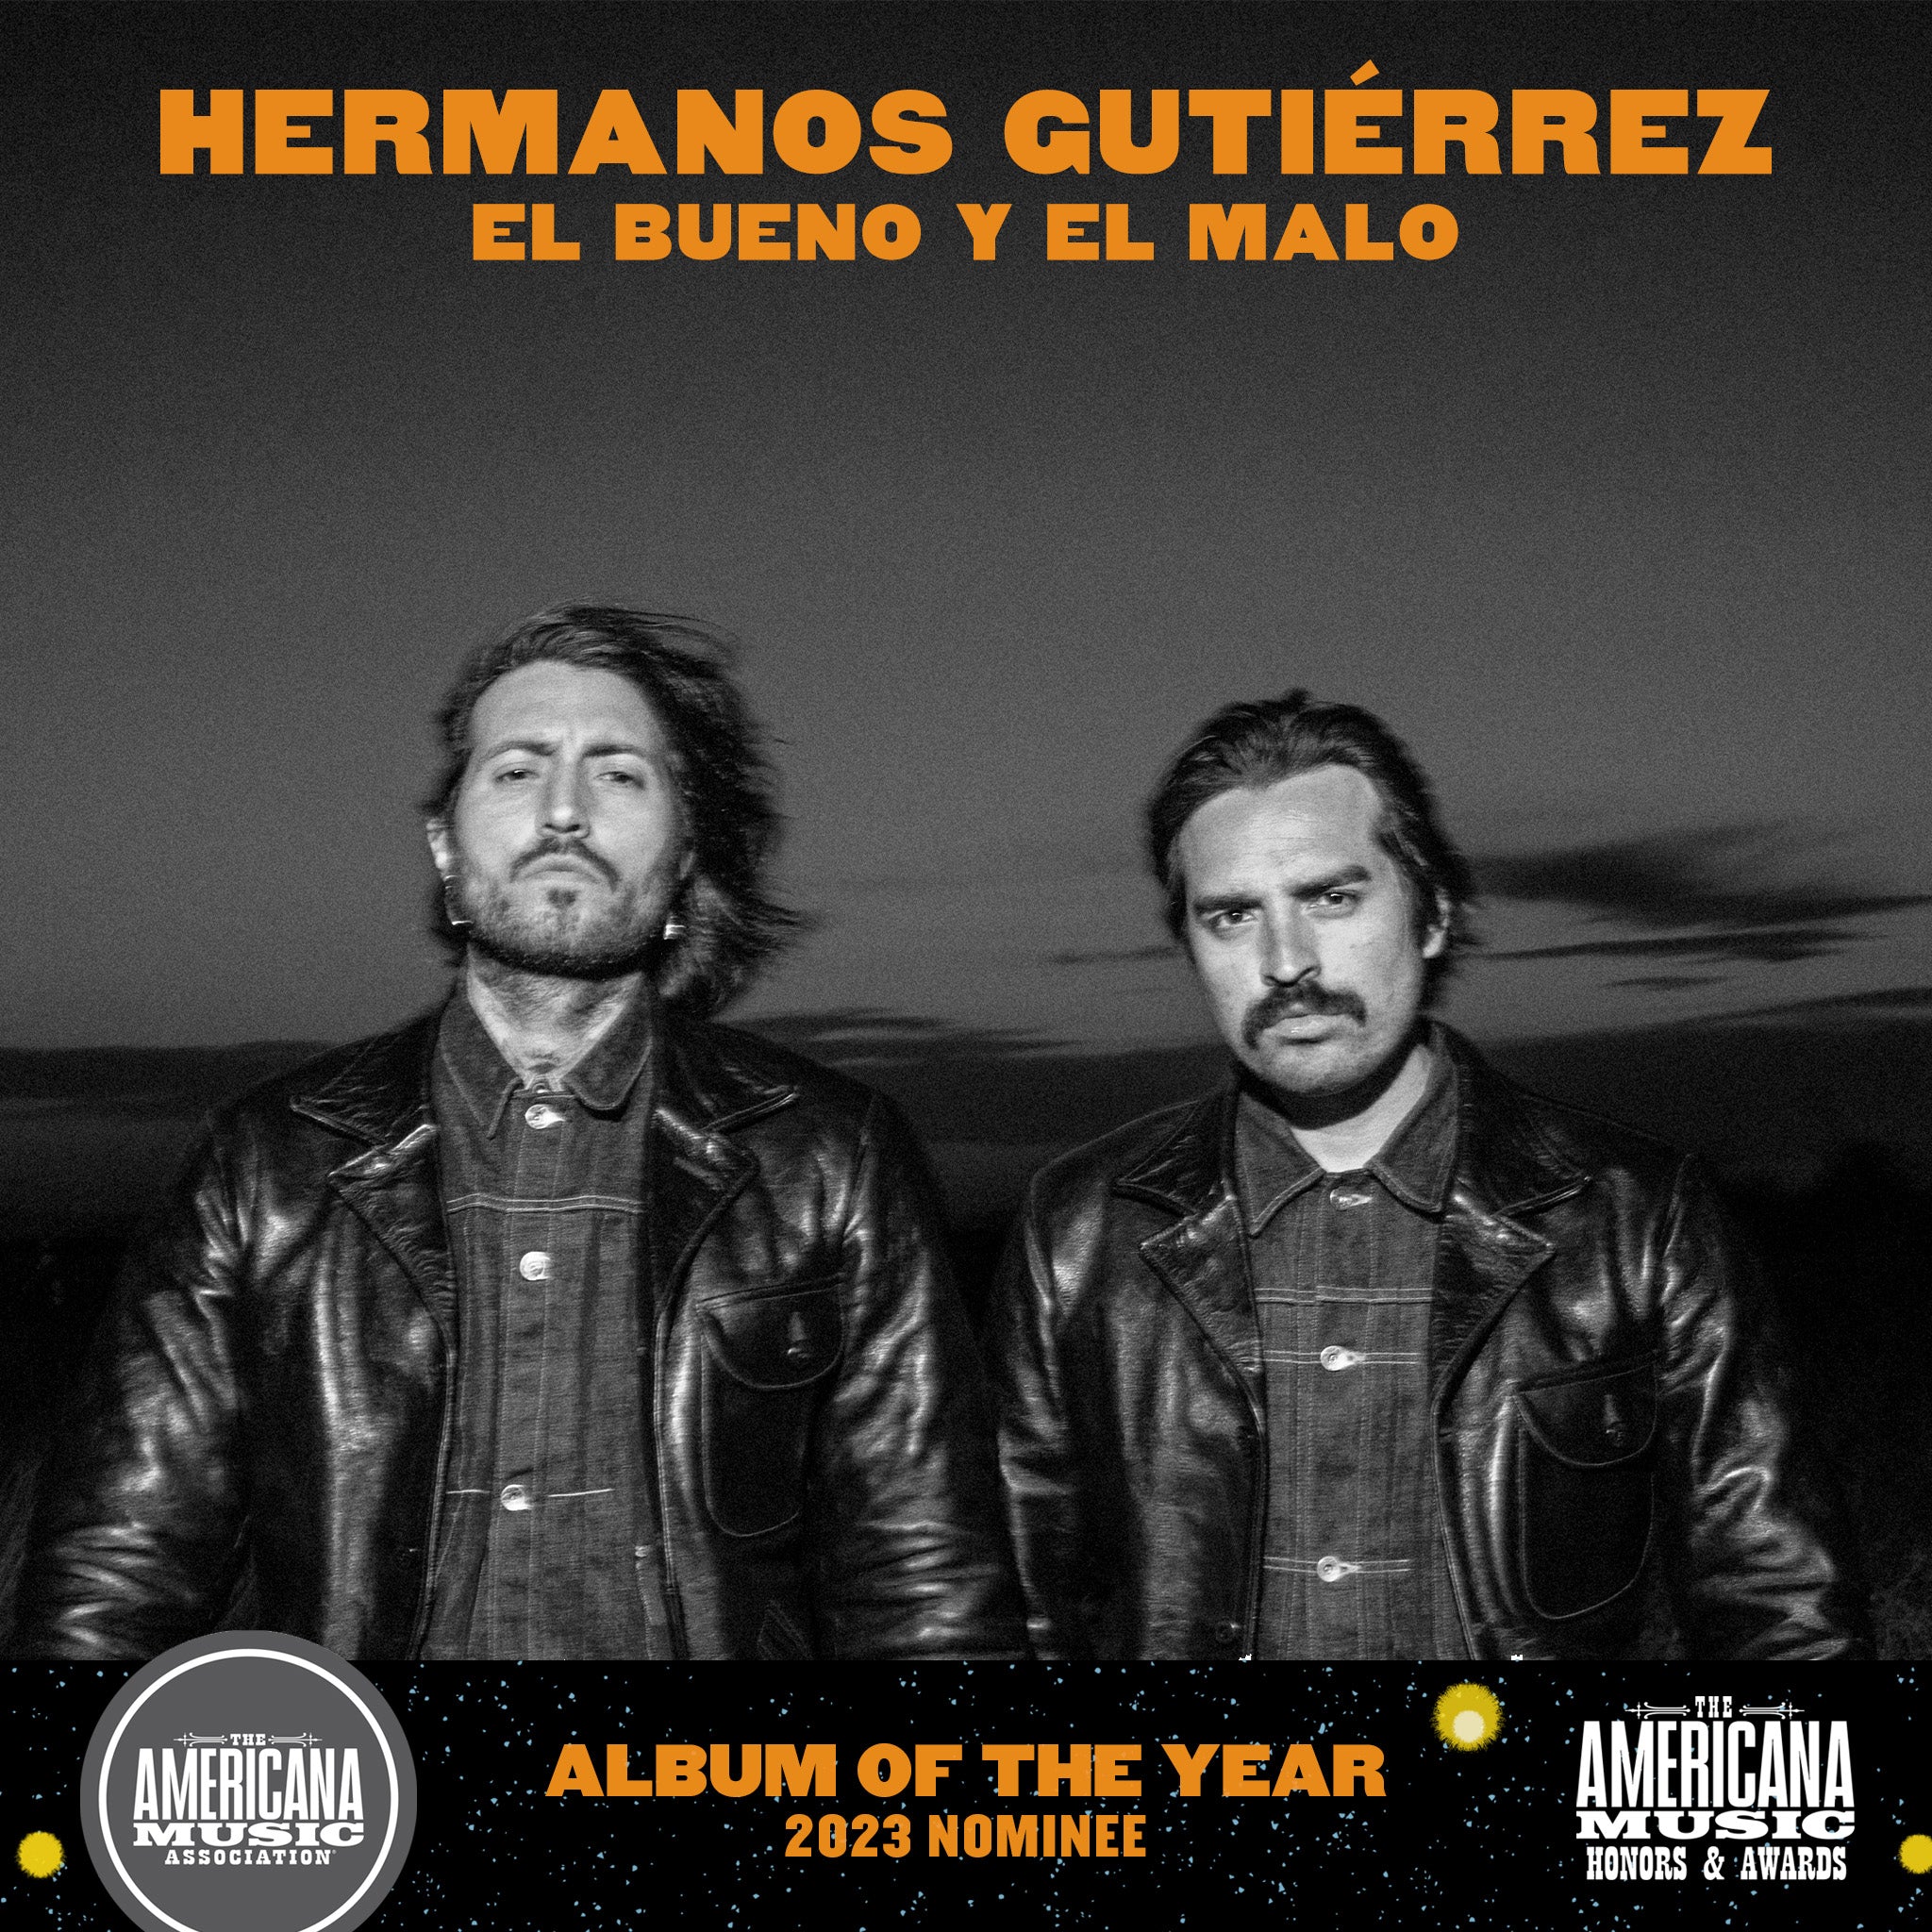 'El Bueno Y El Malo' is nominated for Americana Album of the Year